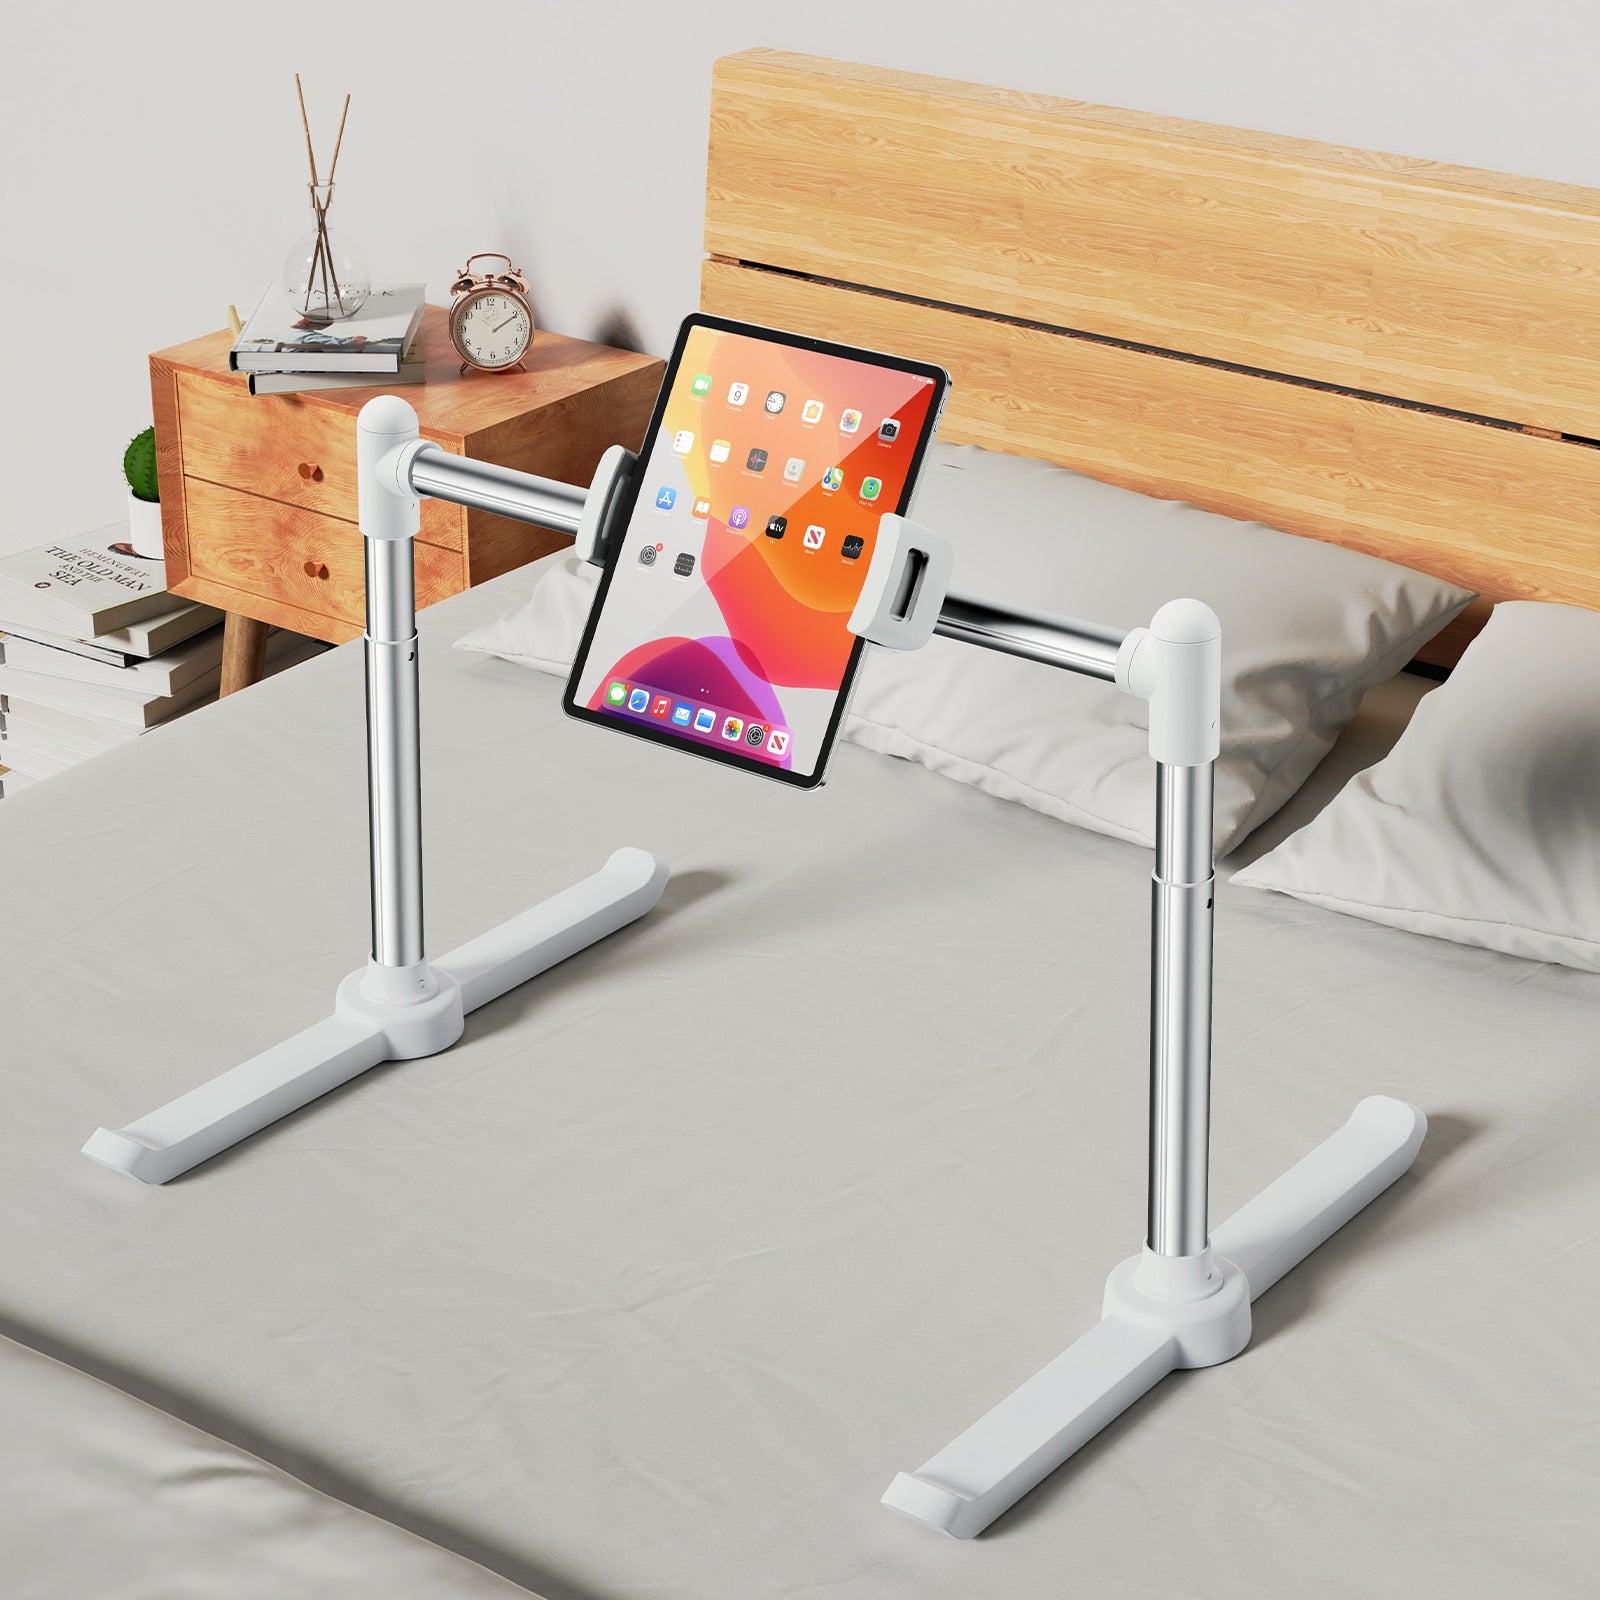 Phone Holder Laptop Stand Rack for Bed Foldable Tablet Pad Holder Adjustable Angle Desktop Bracket Lazy Bracket Clip Holder